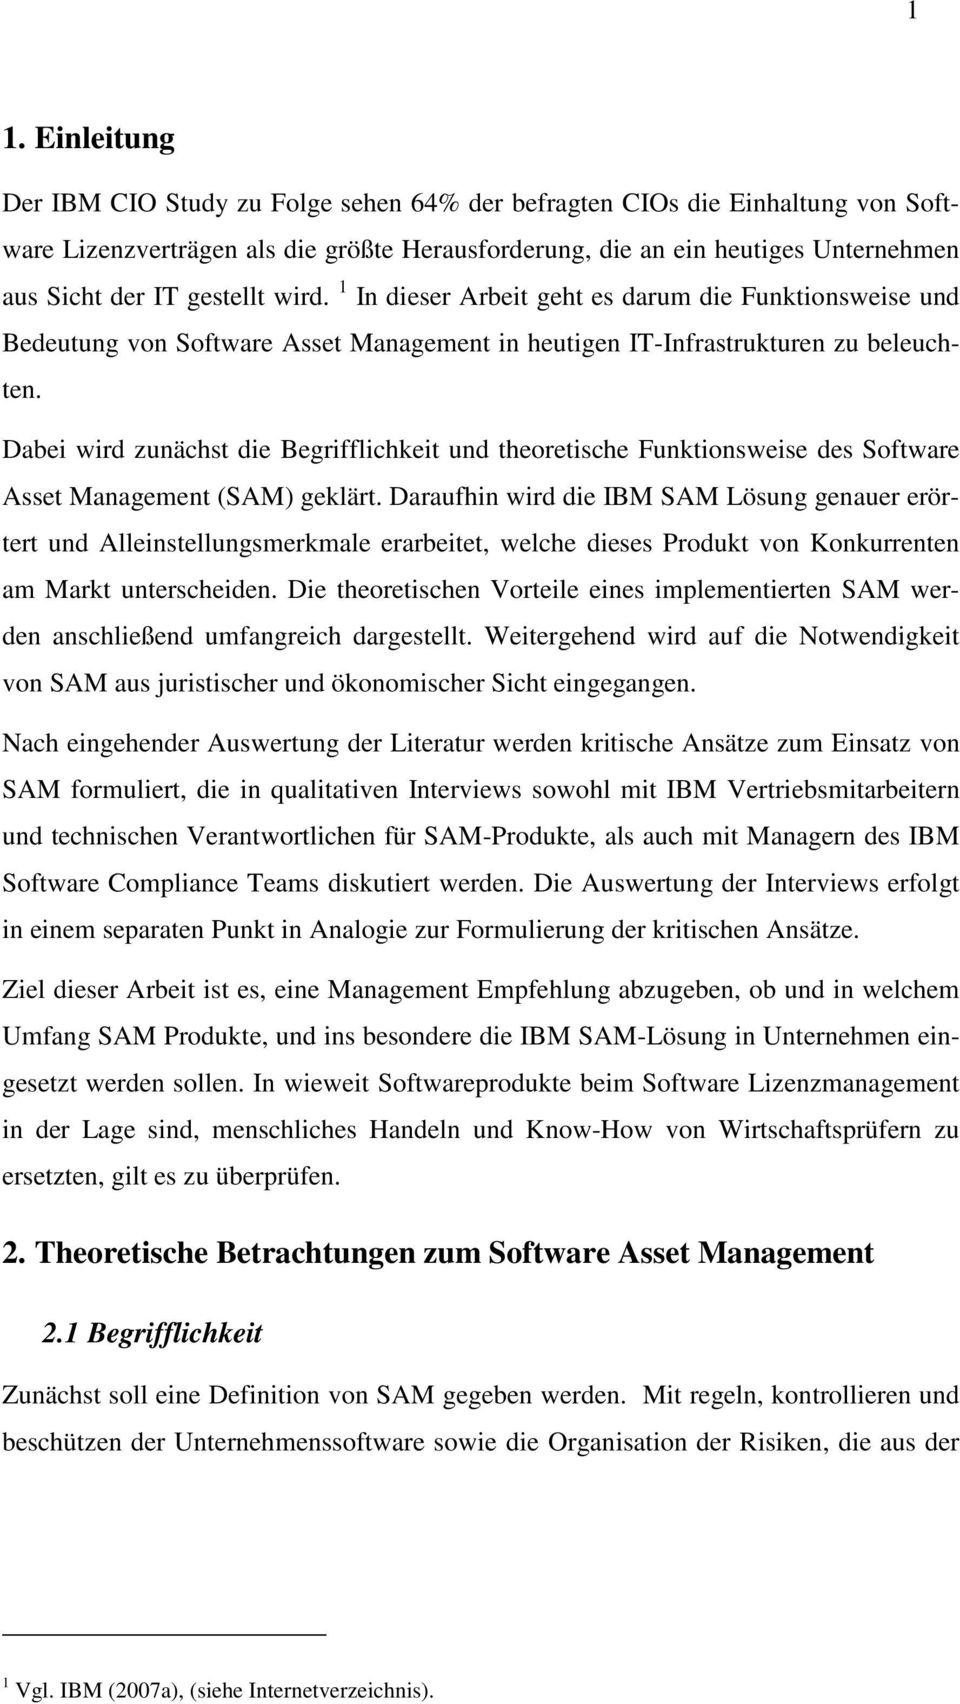 Dabei wird zunächst die Begrifflichkeit und theoretische Funktionsweise des Software Asset Management (SAM) geklärt.